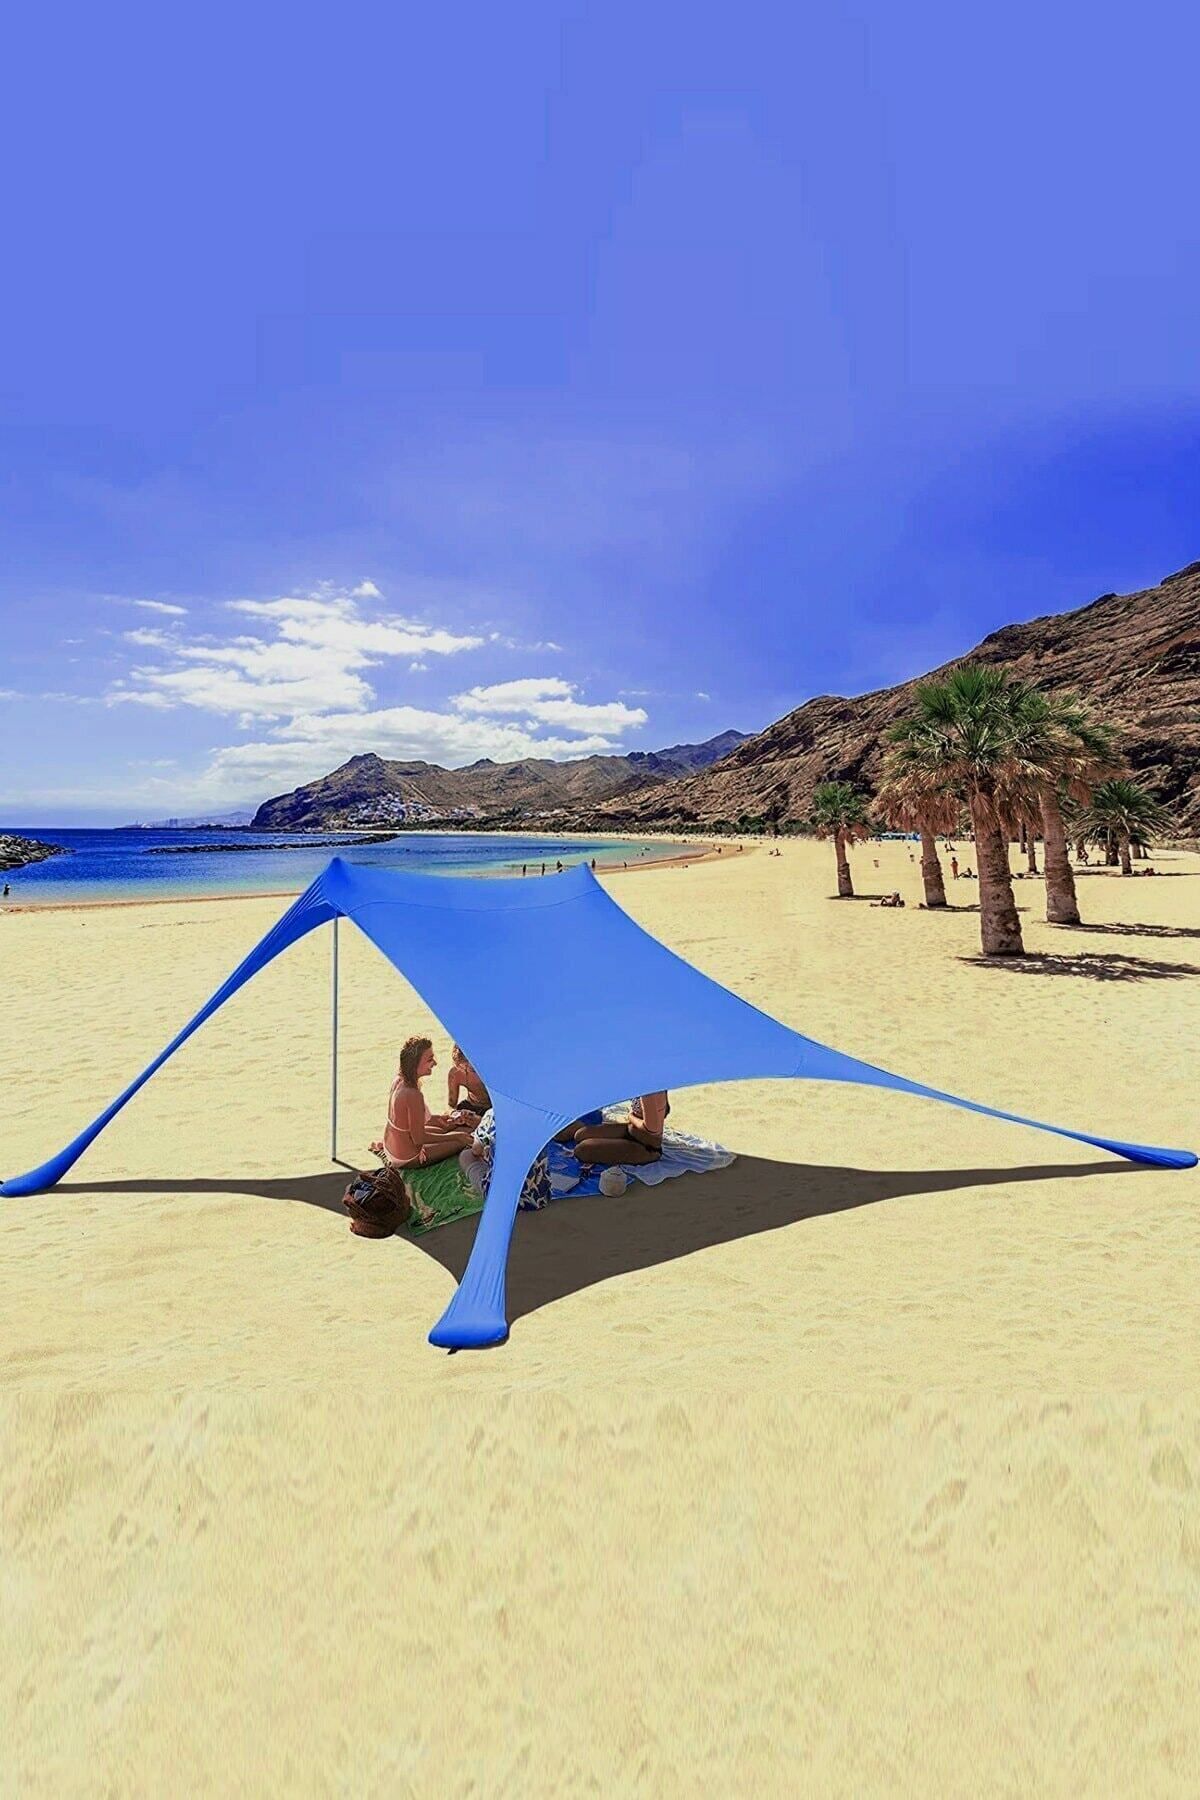 Bundera Markise Mavi Gölgelik Tente Plaj Şemsiyesi Bahçe Teras Kamp Piknik Güneşlik Şemsiye 2.3 Metre